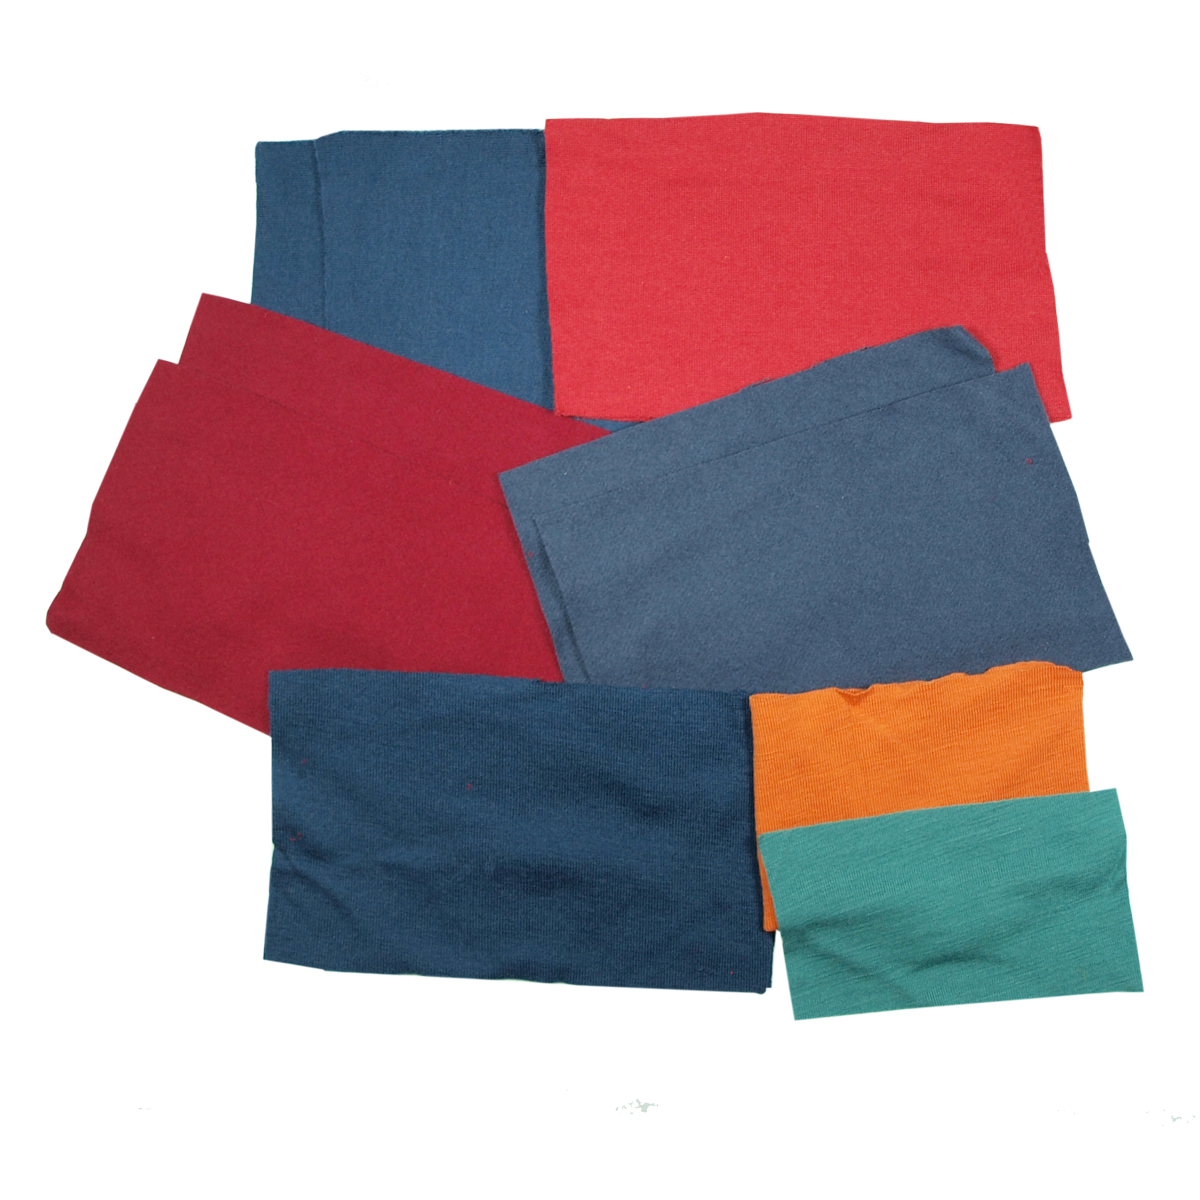 Laglappar av merinoull, olika färger och kvalitéer 12 st rött, blått, grönt, orange mm